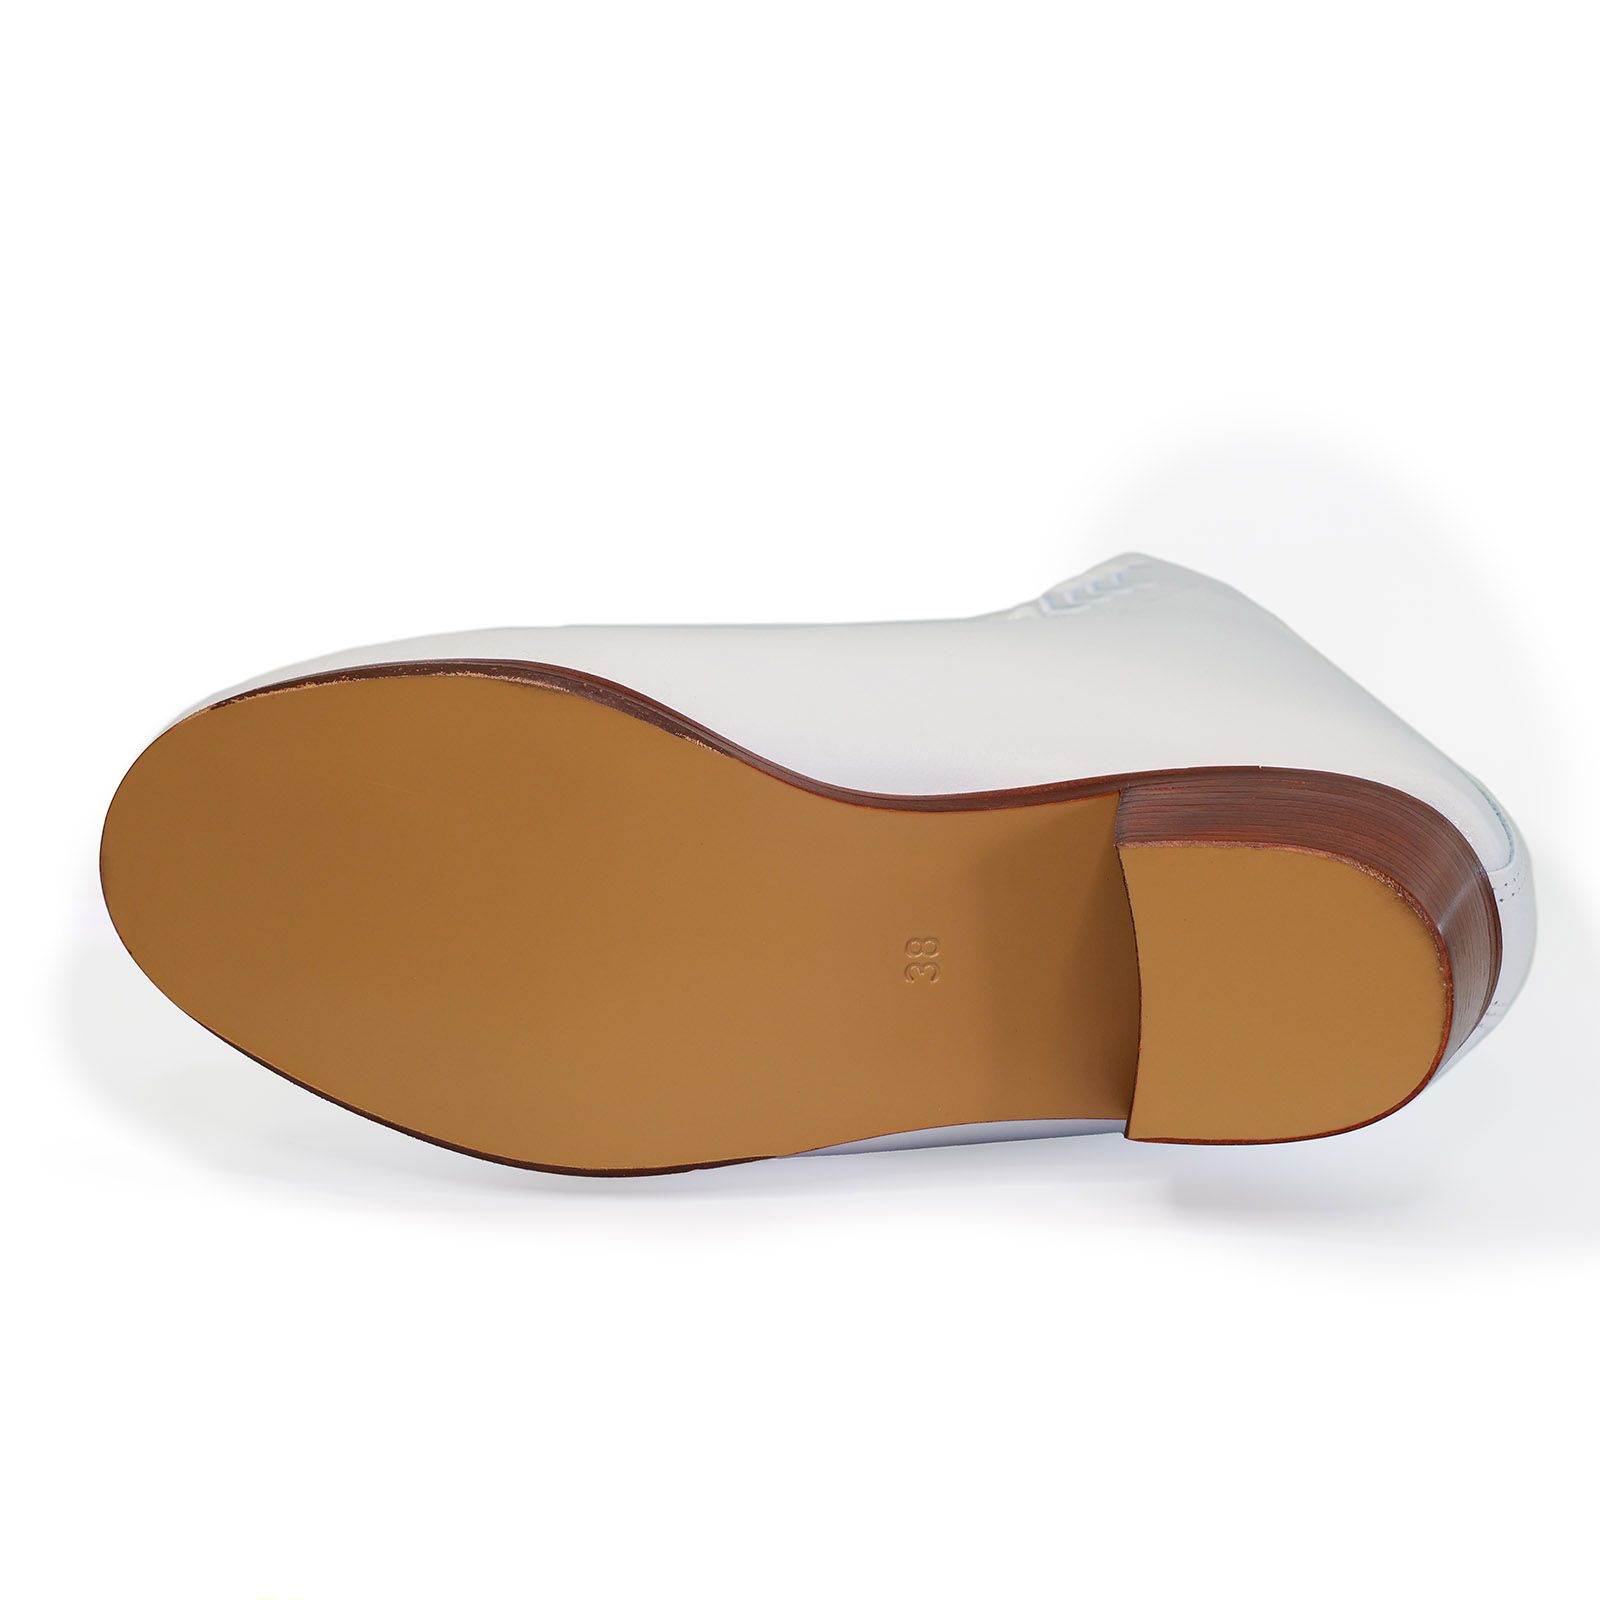 Фигурные ботинки GRAF Sonata для взрослых (Белые)